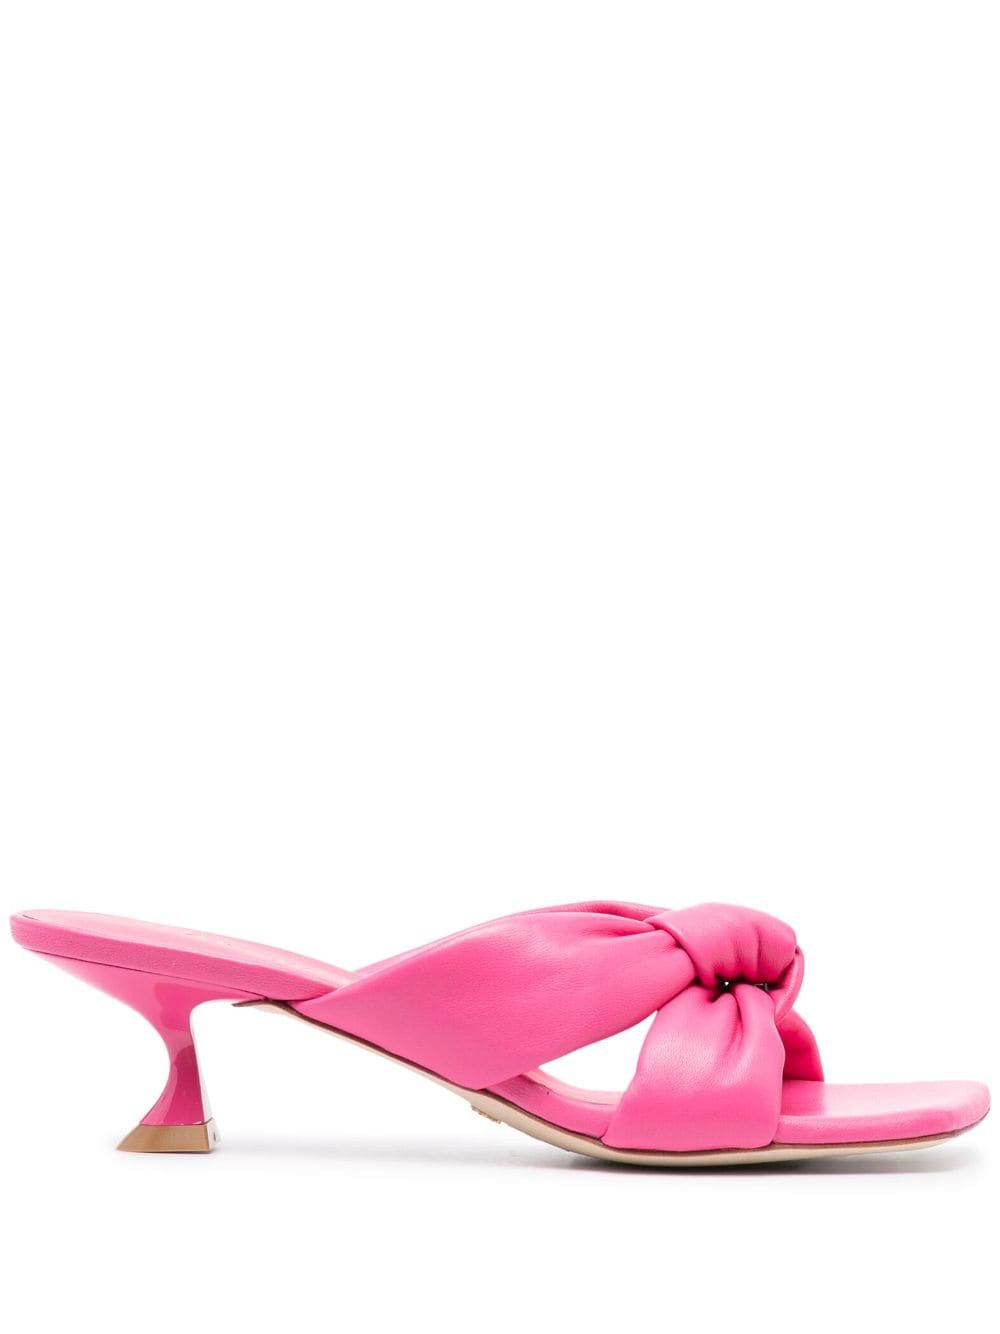 Stuart Weitzman slip-on square-toe sandals - Pink von Stuart Weitzman